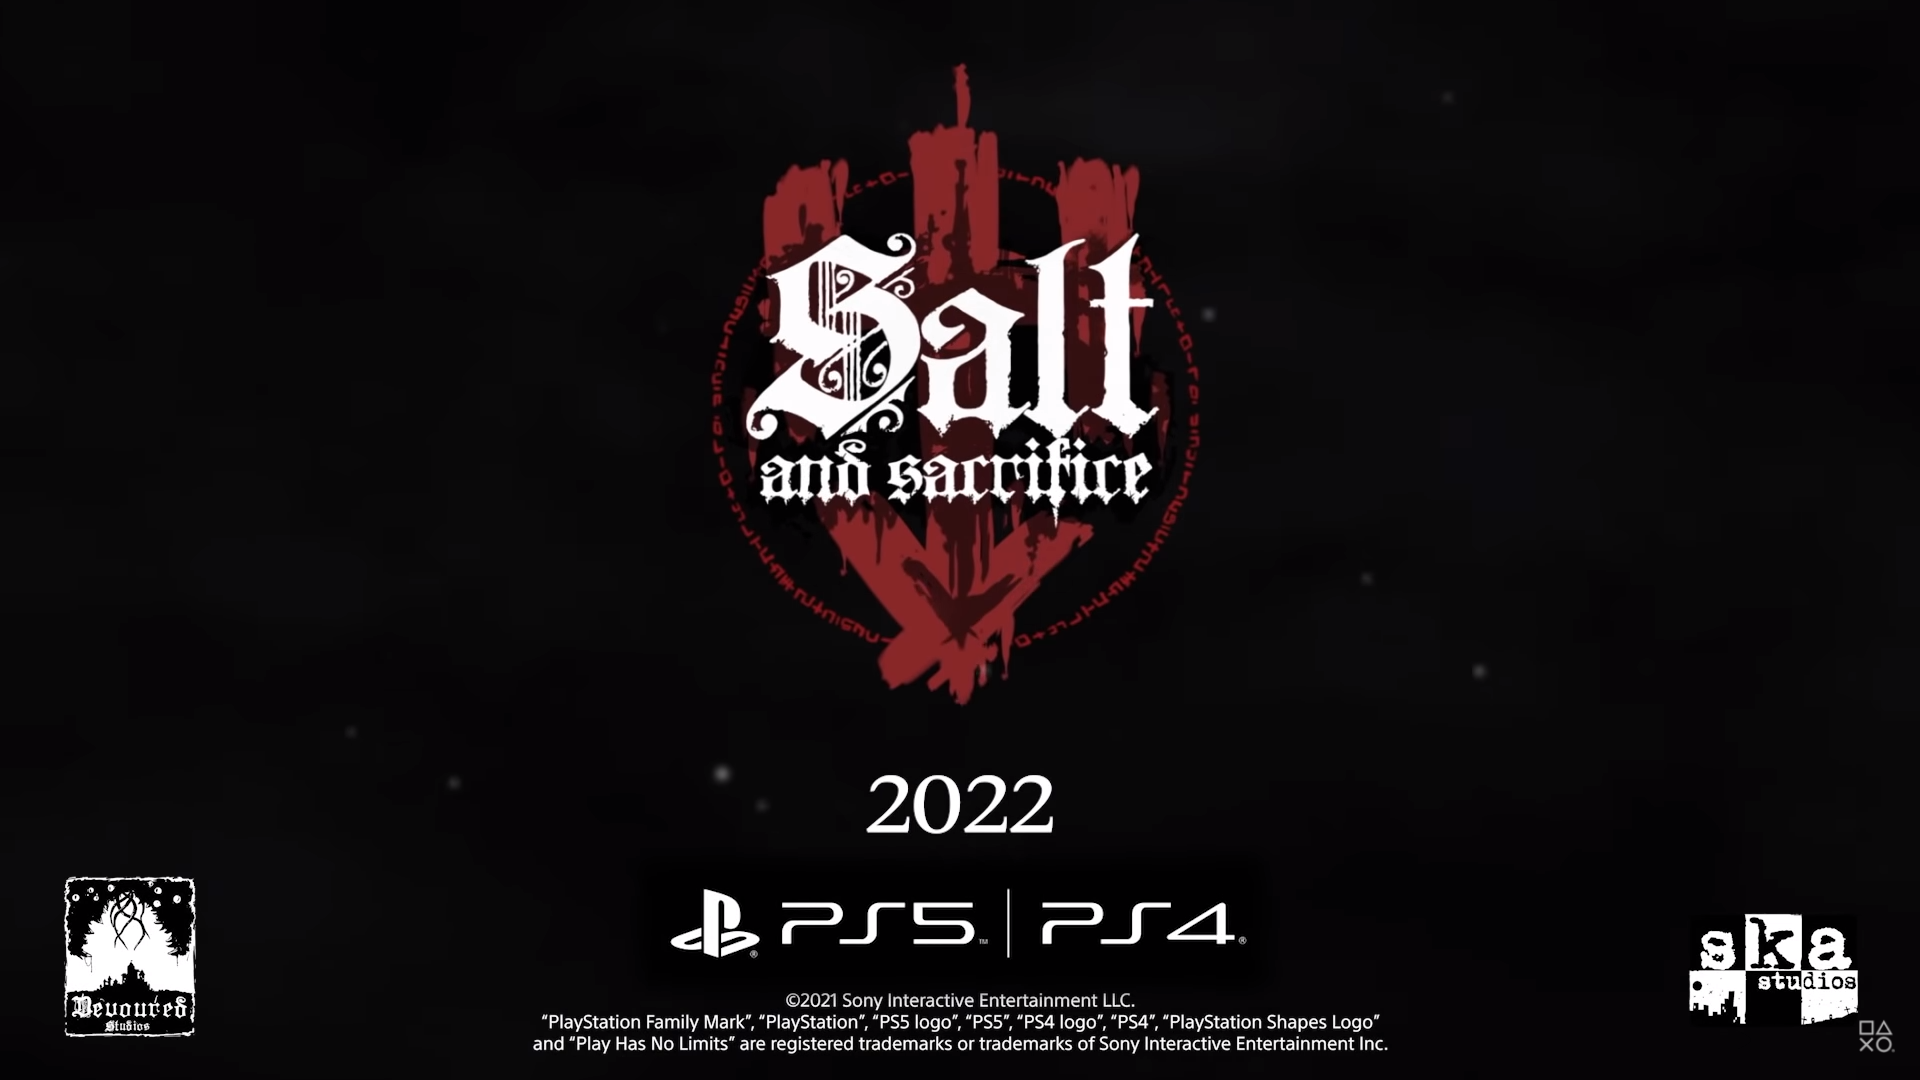 Salt And Sacrifice